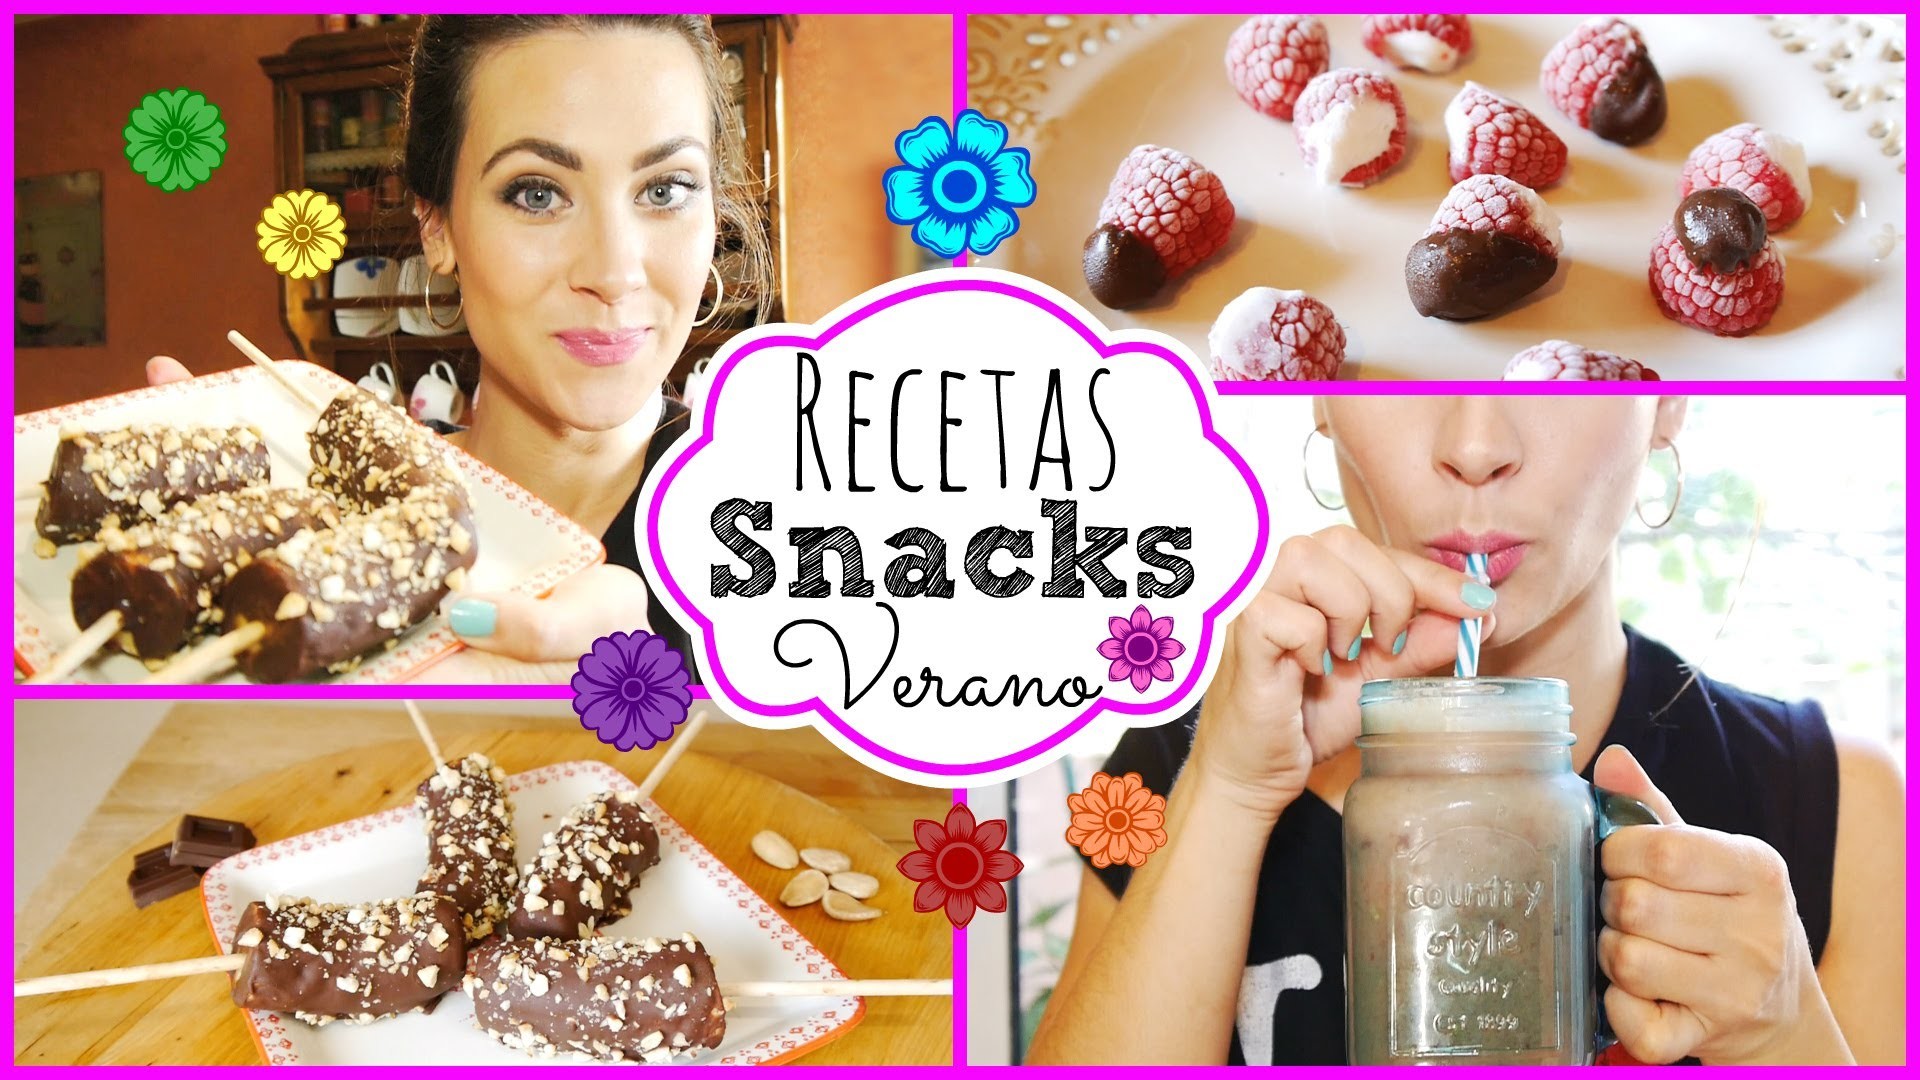 Recetas: Snacks Saludables, Rápidos y Deliciosos de Verano |  Summer Snacks!